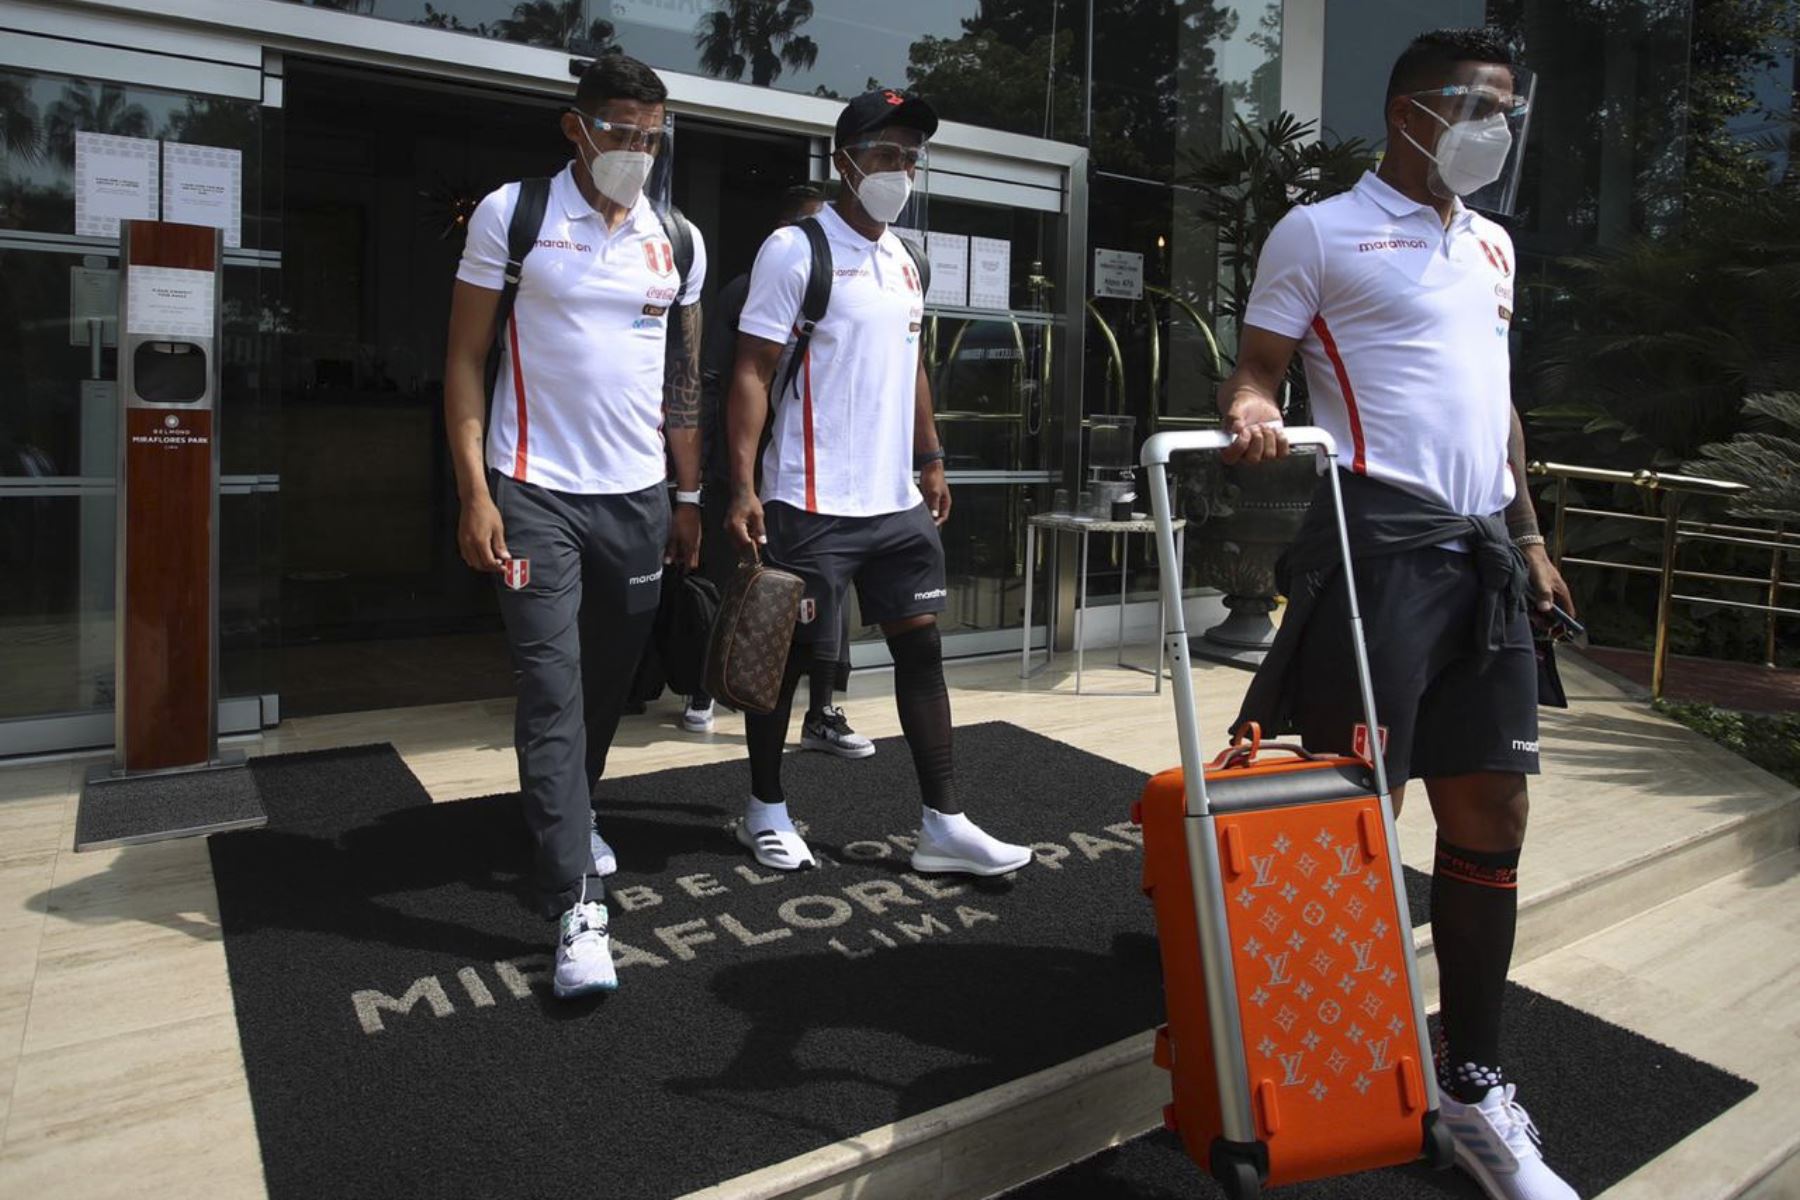 La Selección Peruana parte desde su hotel de concentración hacia el aeropuerto rumbo a Chile a quien enfrentará este viernes por la fecha 3 de las eliminatorias rumbo a Qatar 2022. Foto: FPF